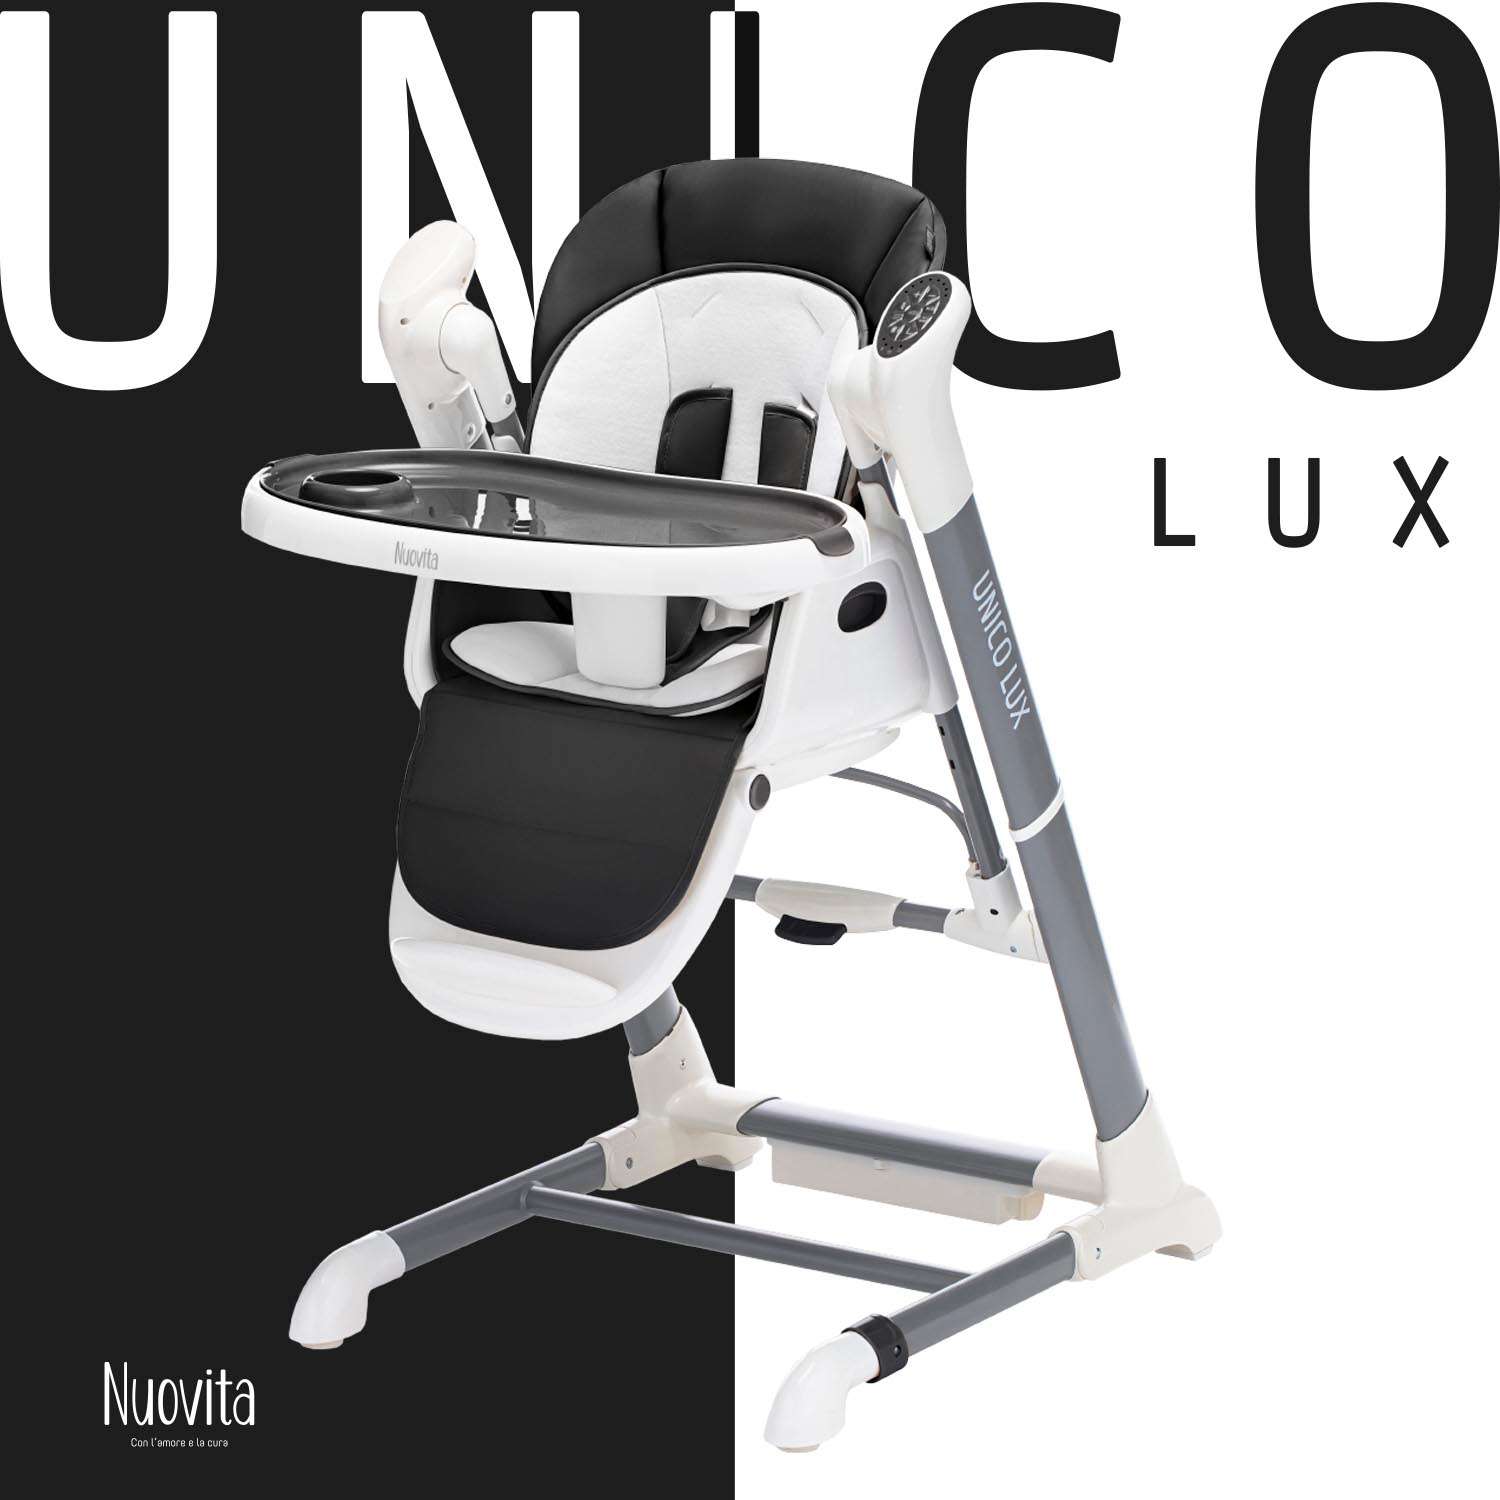 Стульчик для кормления Nuovita Unico lux Bianco с электронным устройством качения Черный - фото 4